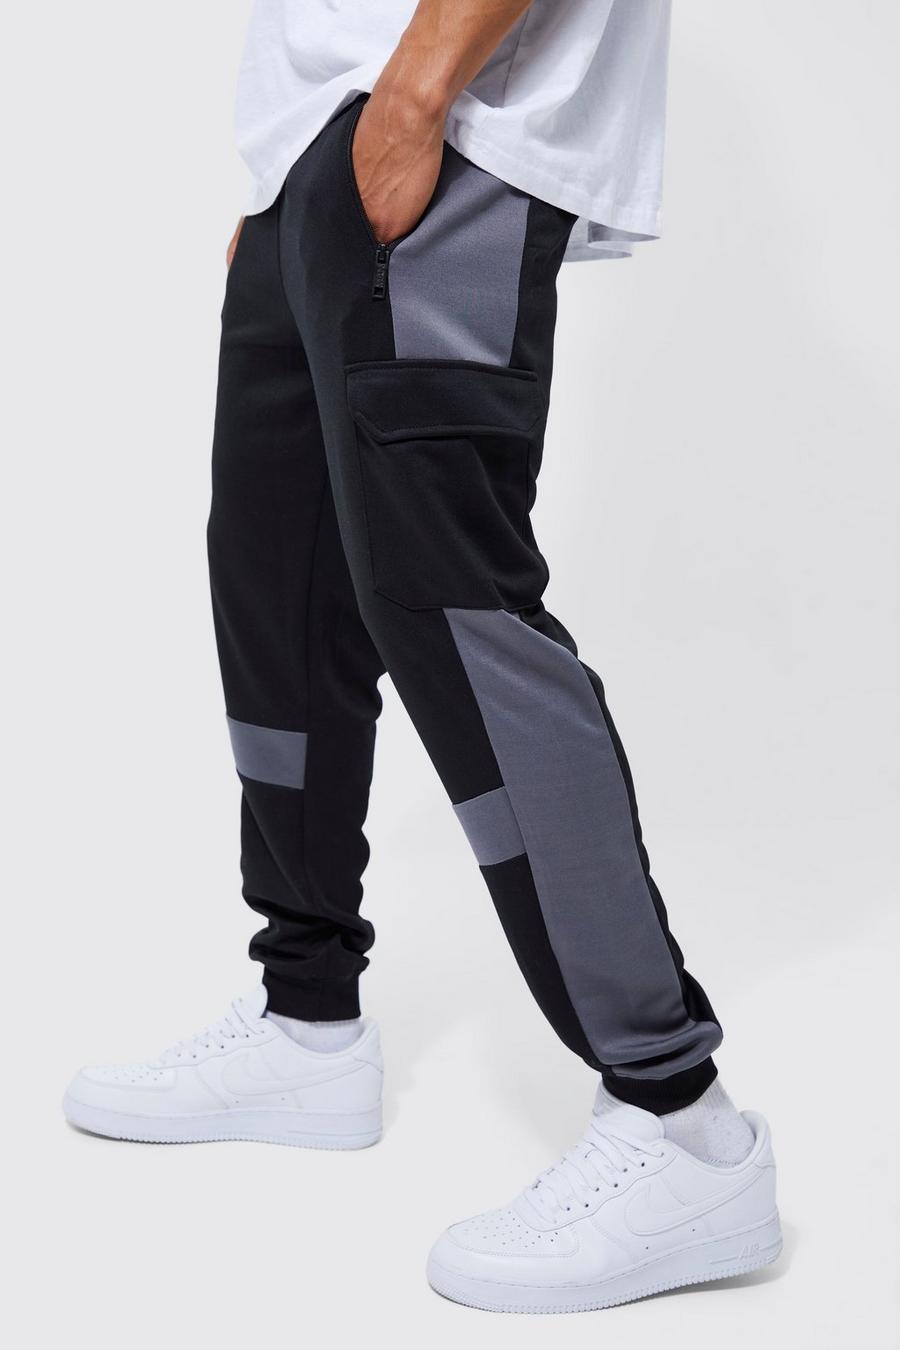 Pantalón deportivo ajustado Limited con colores en bloque, Black nero